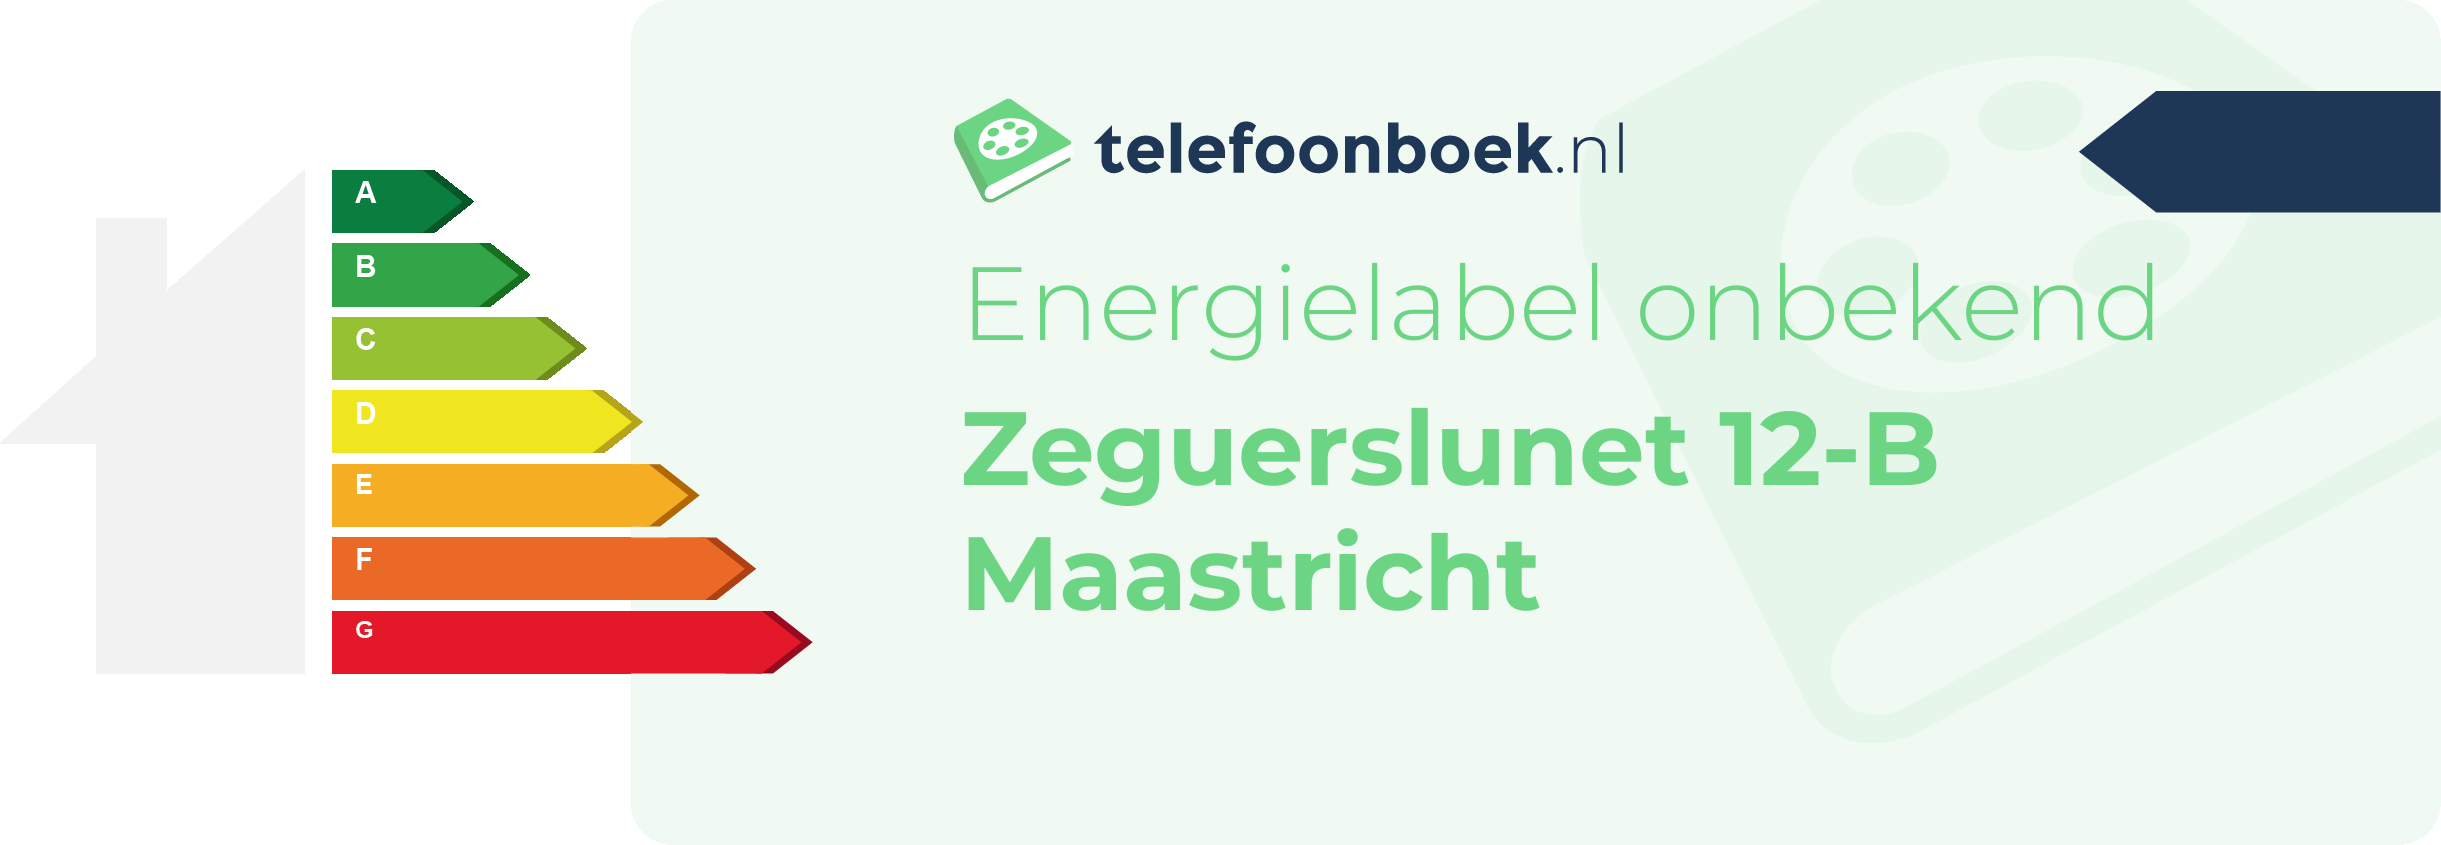 Energielabel Zeguerslunet 12-B Maastricht